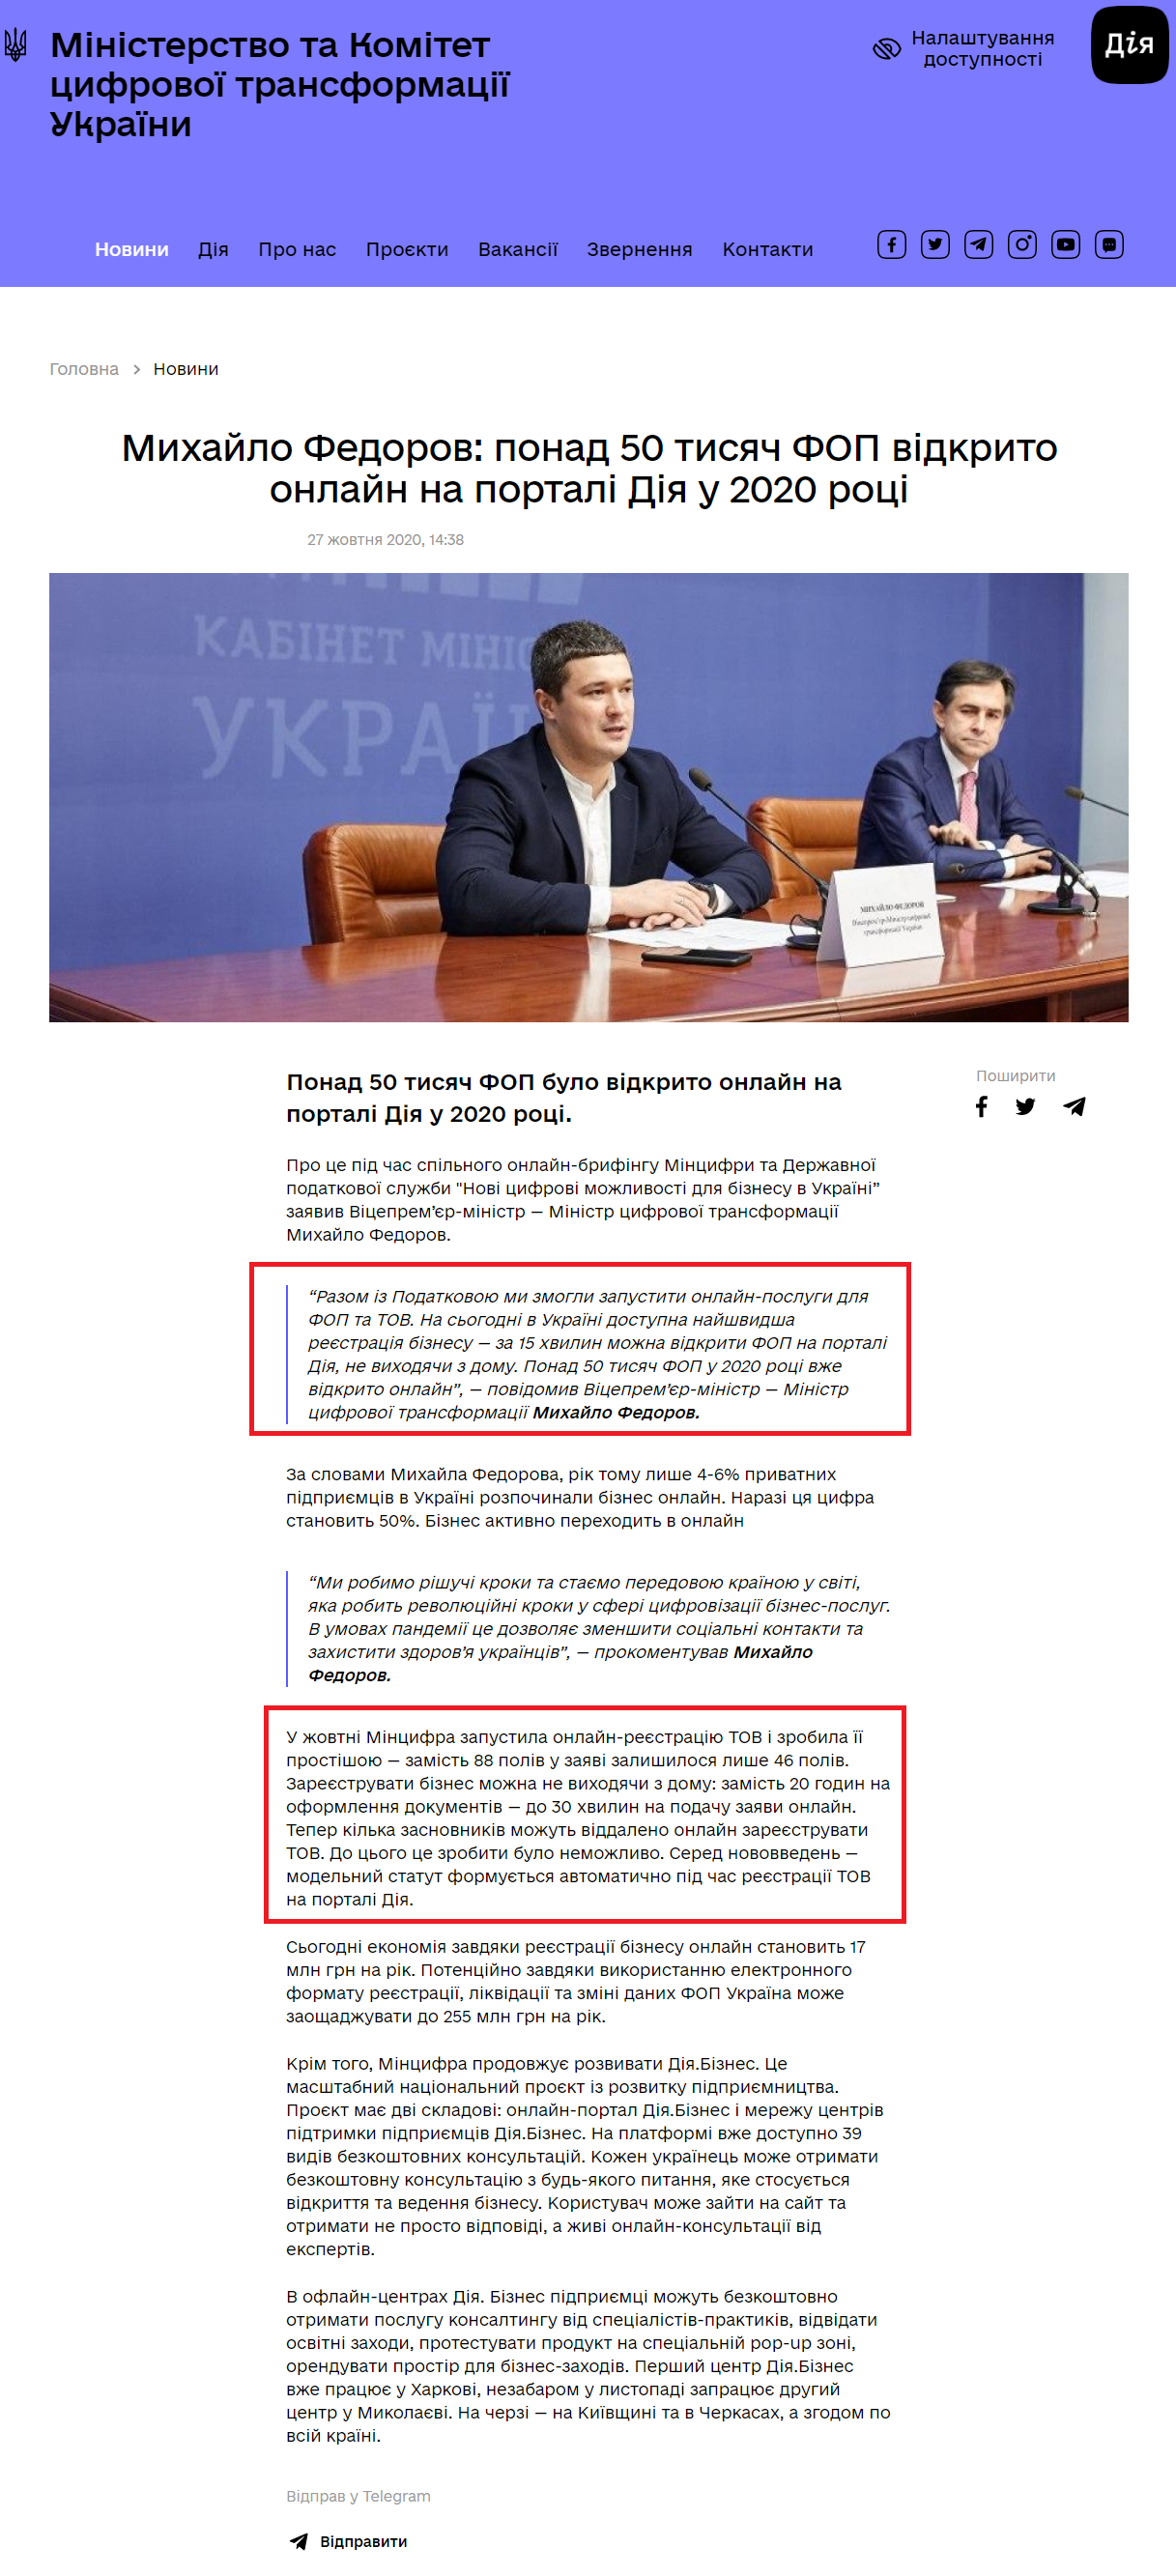 https://thedigital.gov.ua/news/mikhaylo-fedorov-ponad-50-tisyach-fop-vidkrito-onlayn-na-portali-diya-u-2020-rotsi